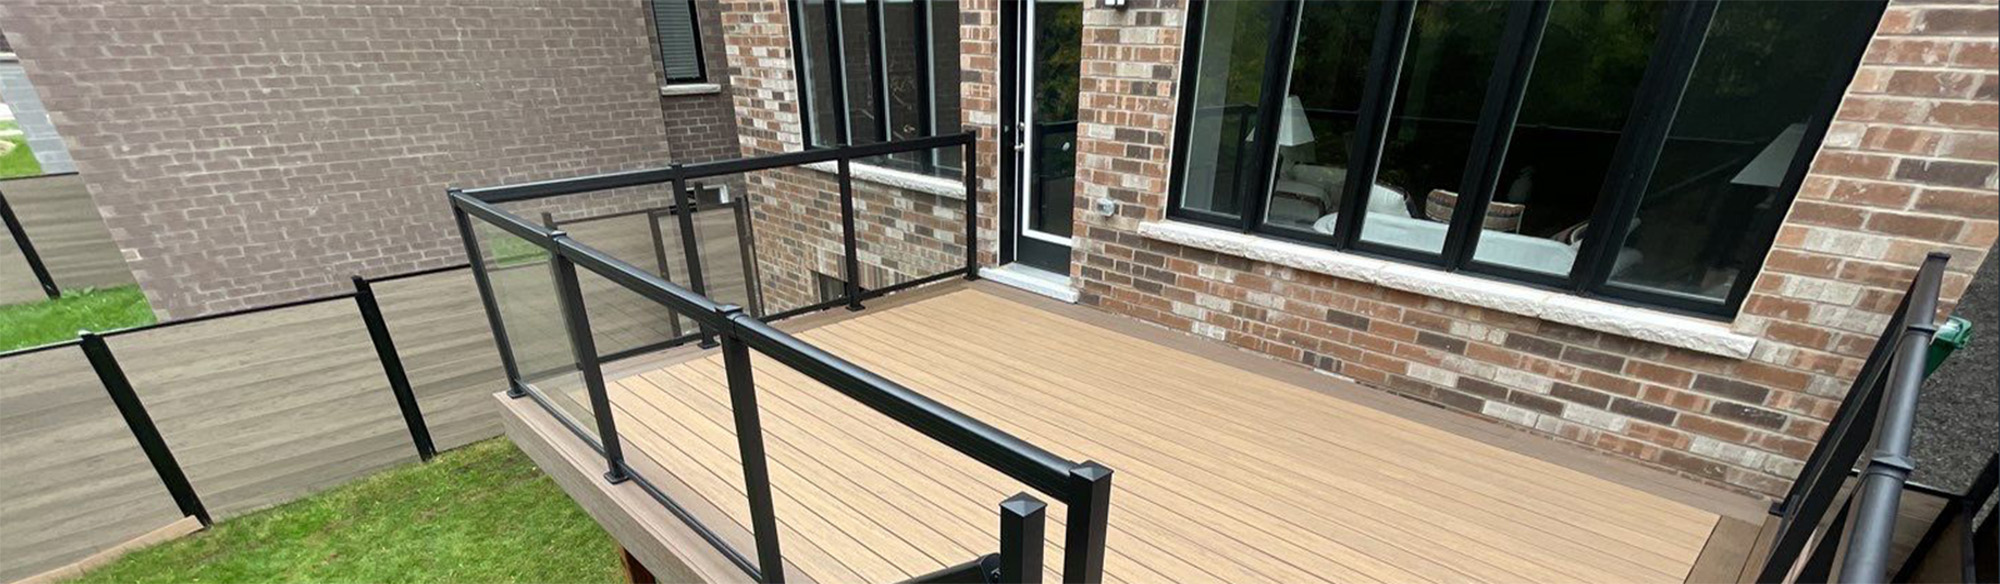 wooden deck with black metal railings